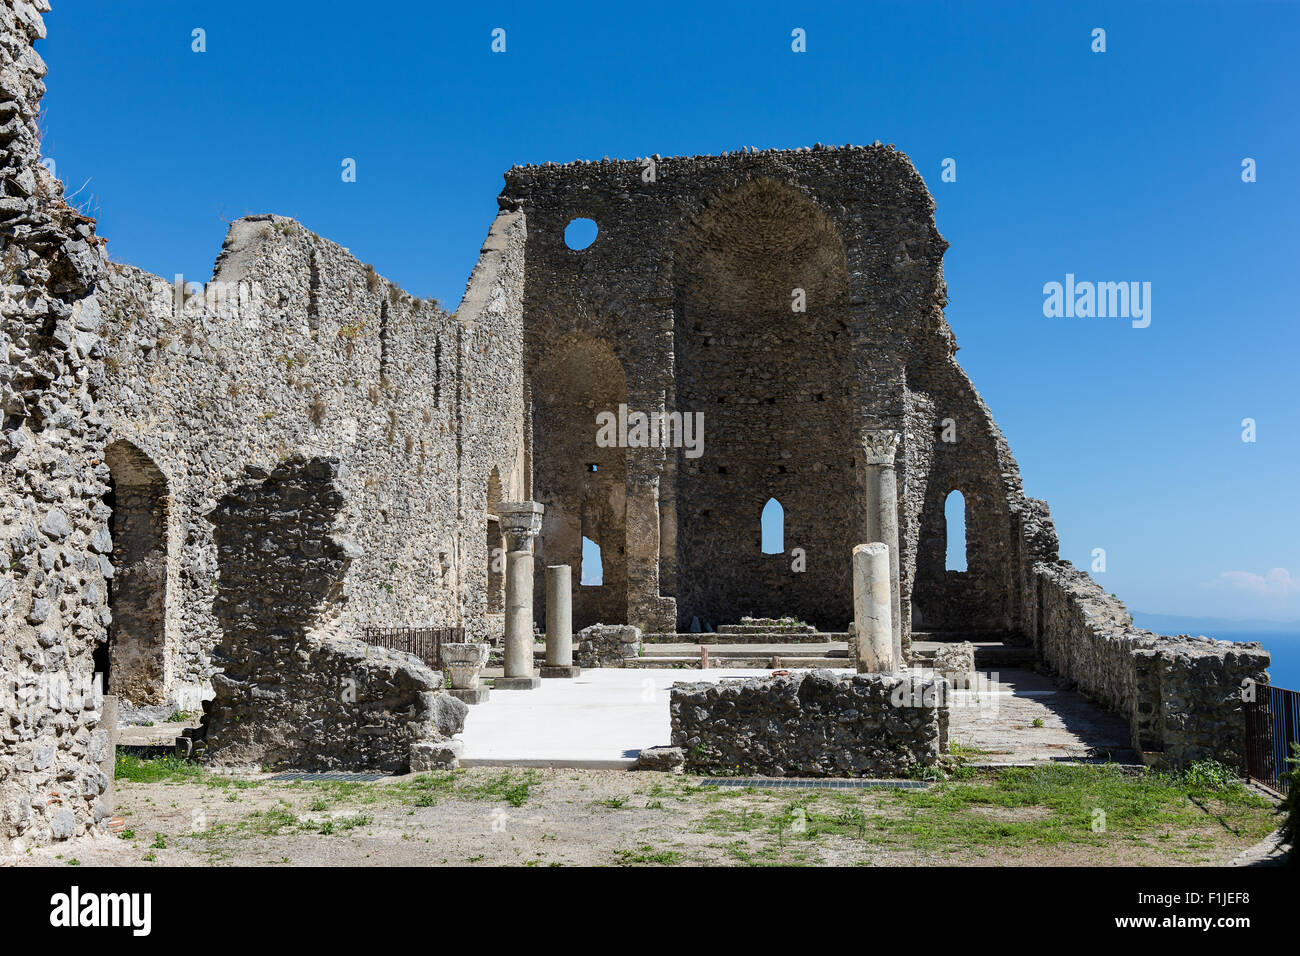 Les ruines de la Basilique de Sant'Eustachio dans le village de Pontone, province de Salerne, Italie Banque D'Images